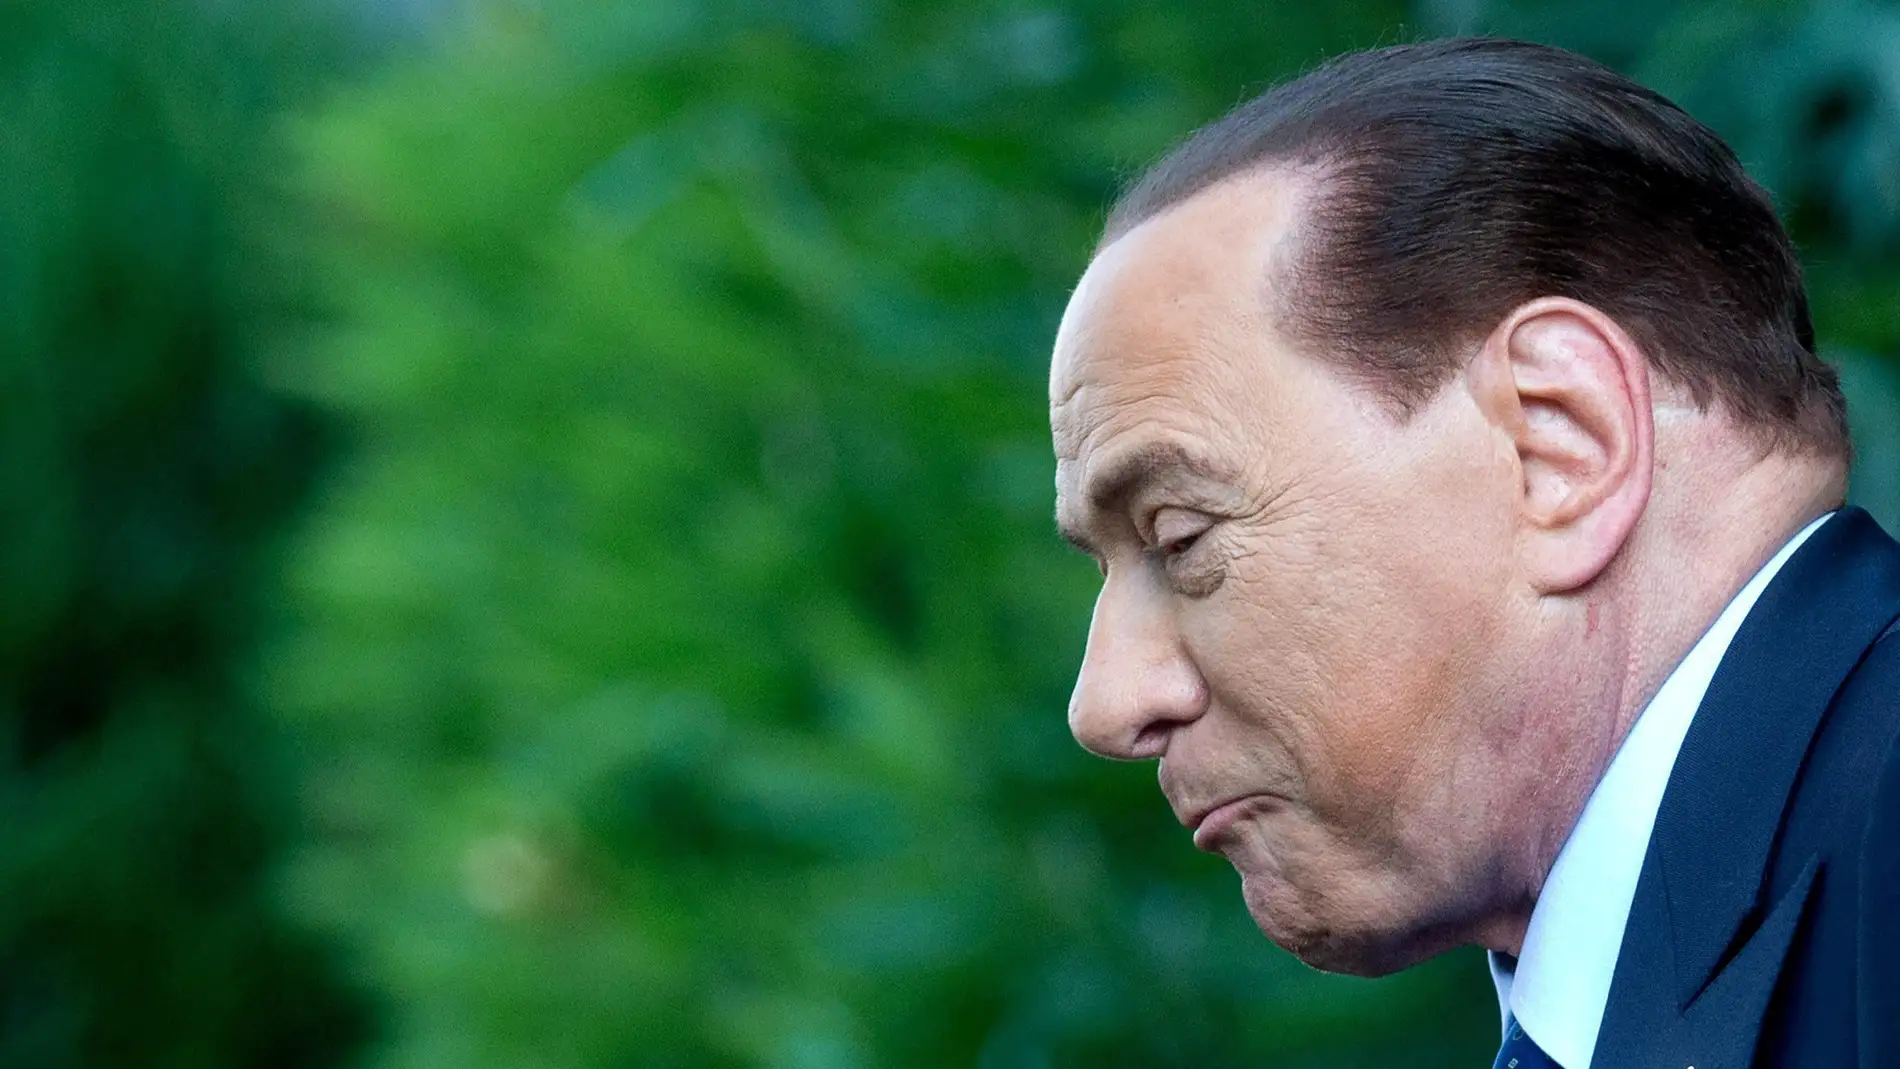 El ex Primer Ministro Italiano, Silvio Berlusconi, ha sido condenado a tres años de prisión